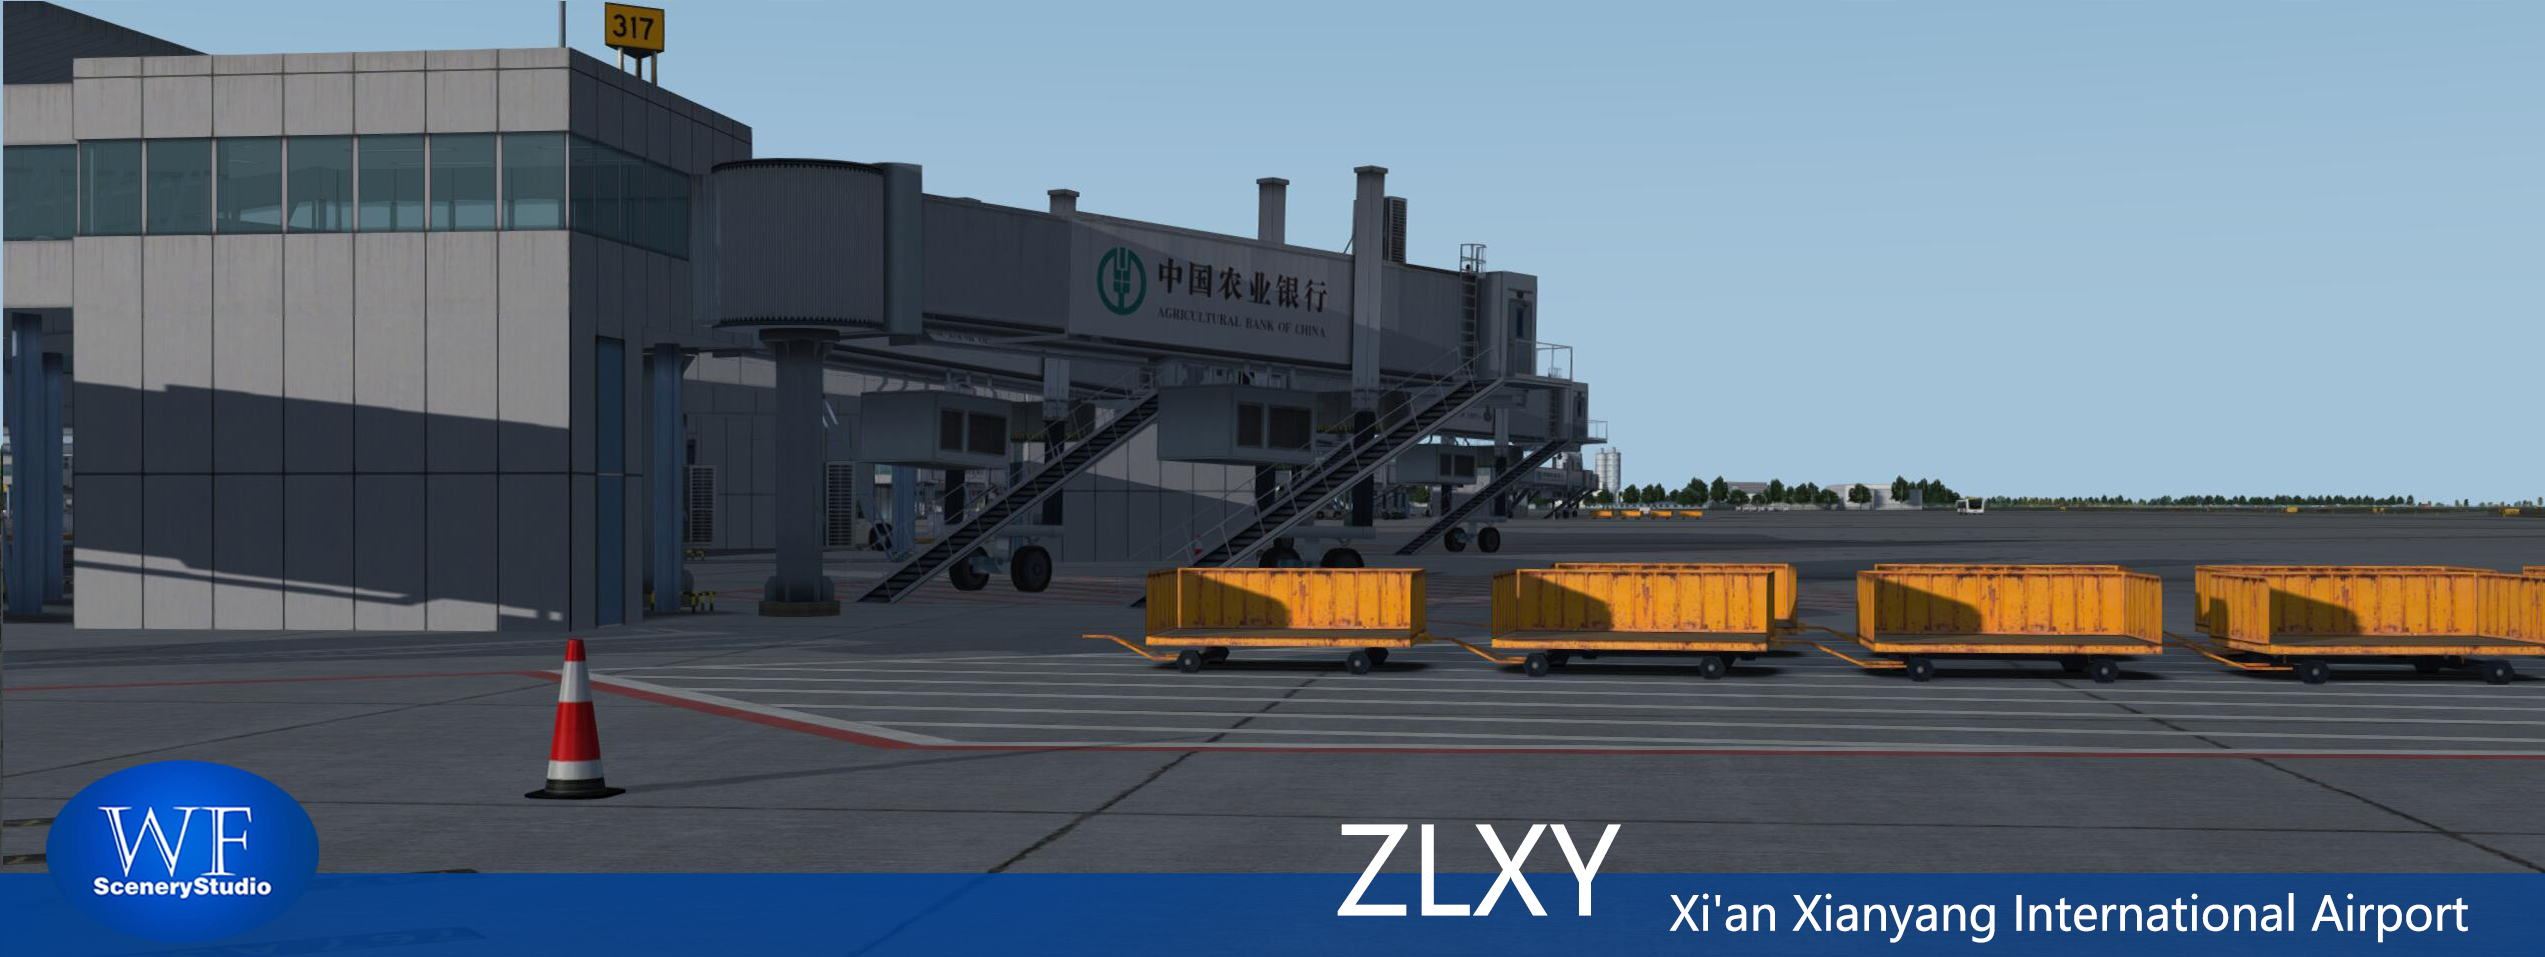 西安咸阳国际机场FSX和P3DV3 版本发布-1057 